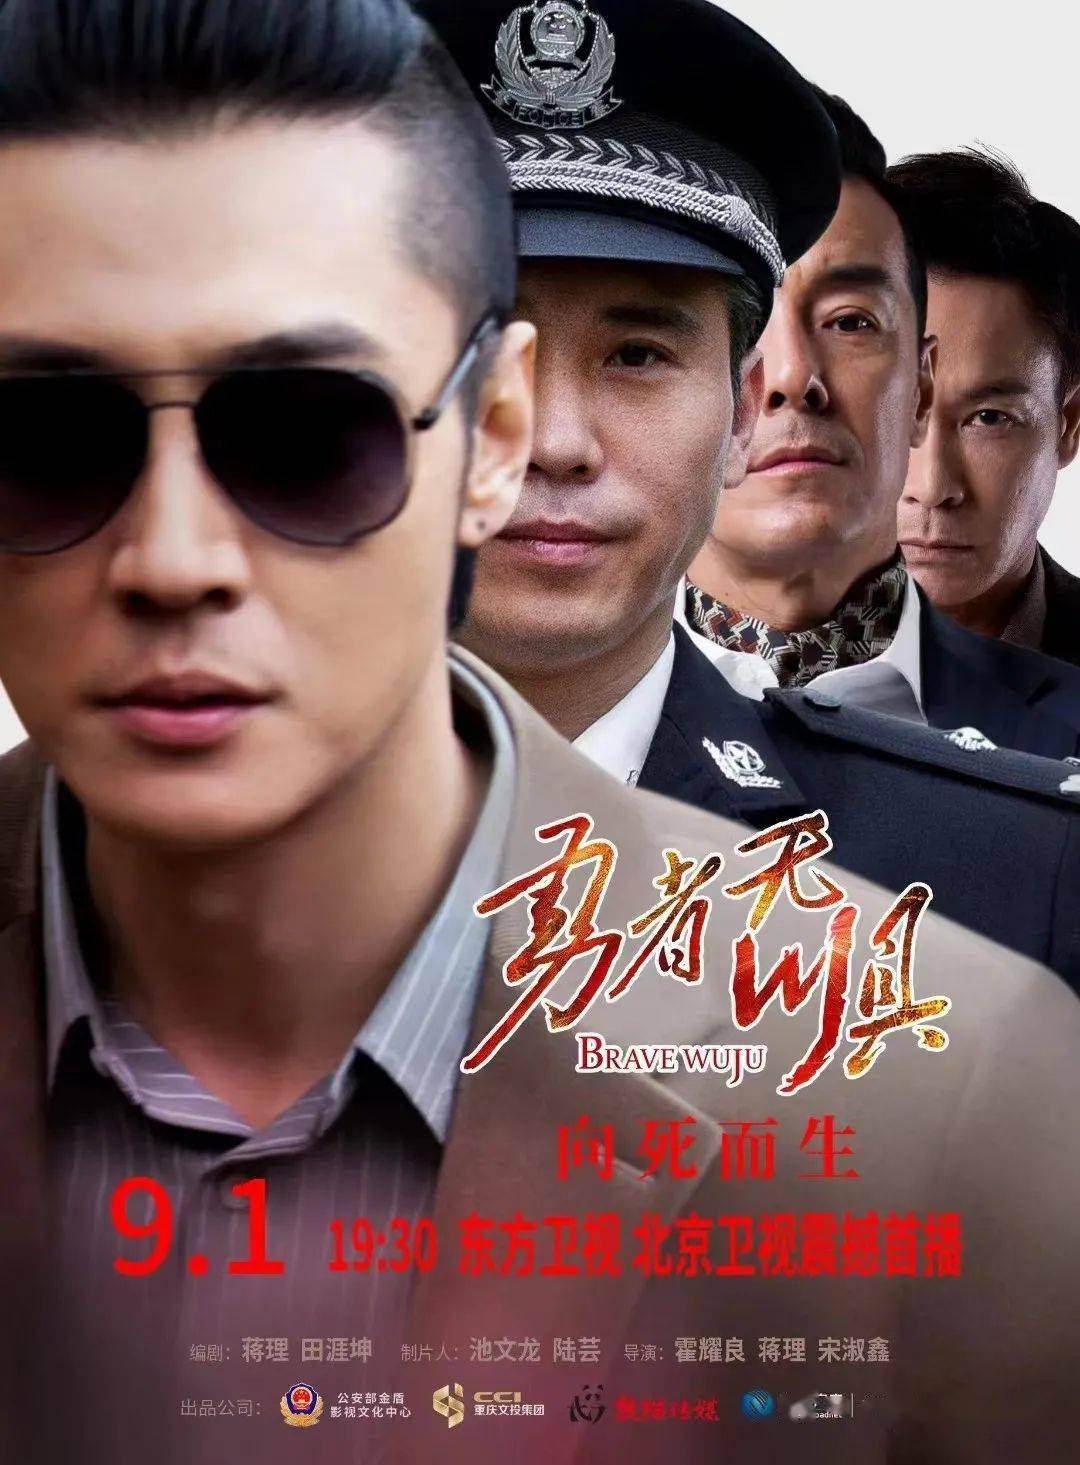 由马边作家创作的大型公安缉毒电视剧《勇者无惧》9月1日19:30在东方